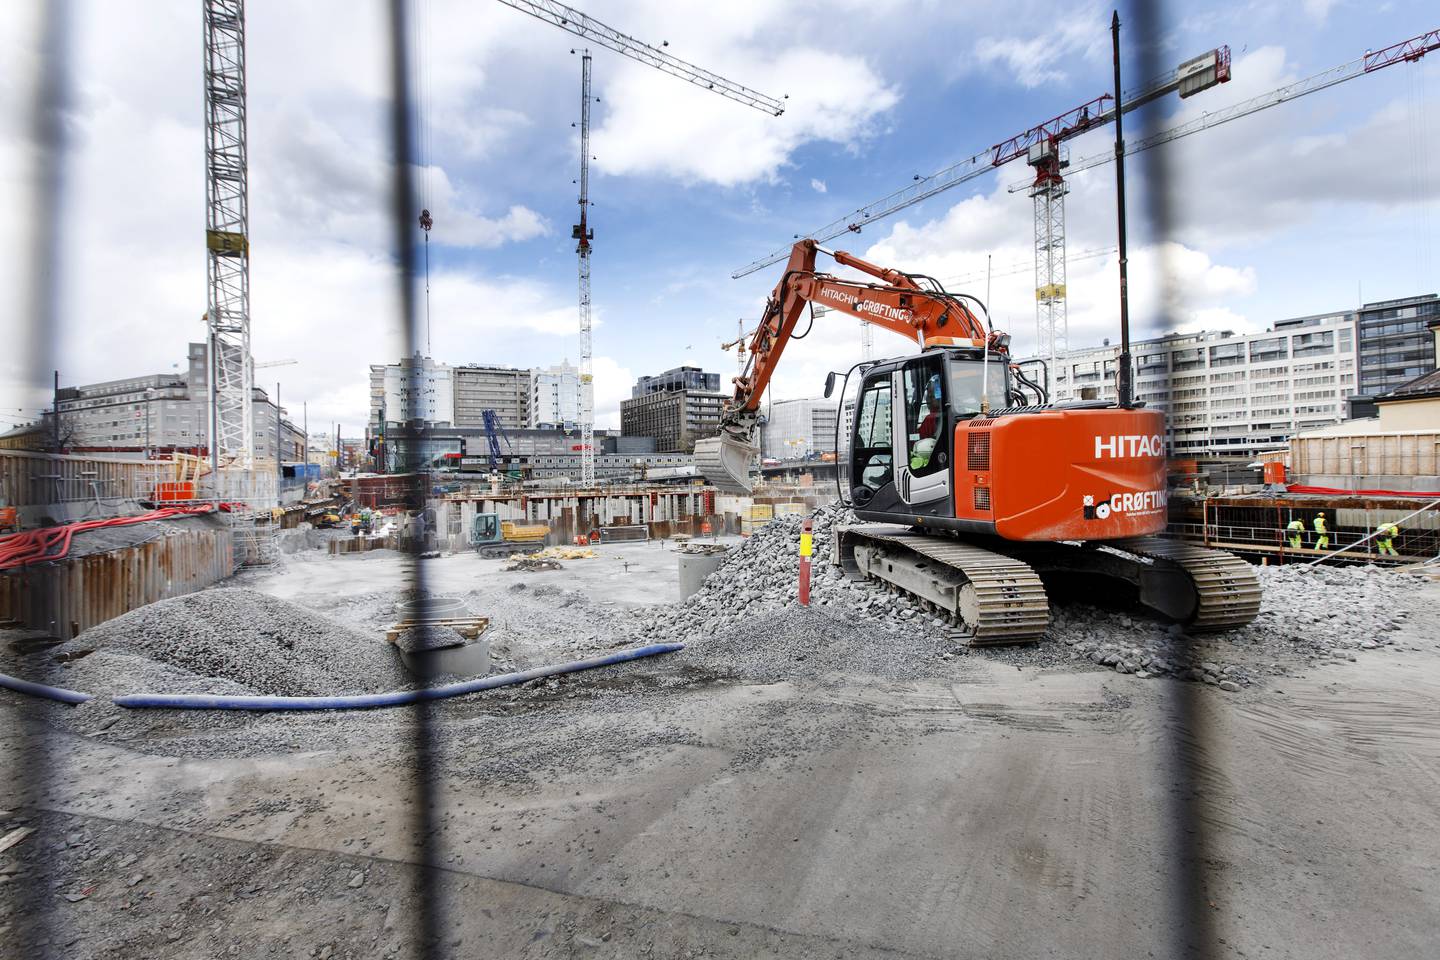 I fjor sendte Fair Play Bygg Oslo og omegn 247 varsler om kriminalitet i byggenæringen. Det er 22 flere enn året før. I tillegg ser prosjektleder Lars Mamen at kriminaliteten blir grovere. Illustrasjonsbilde.